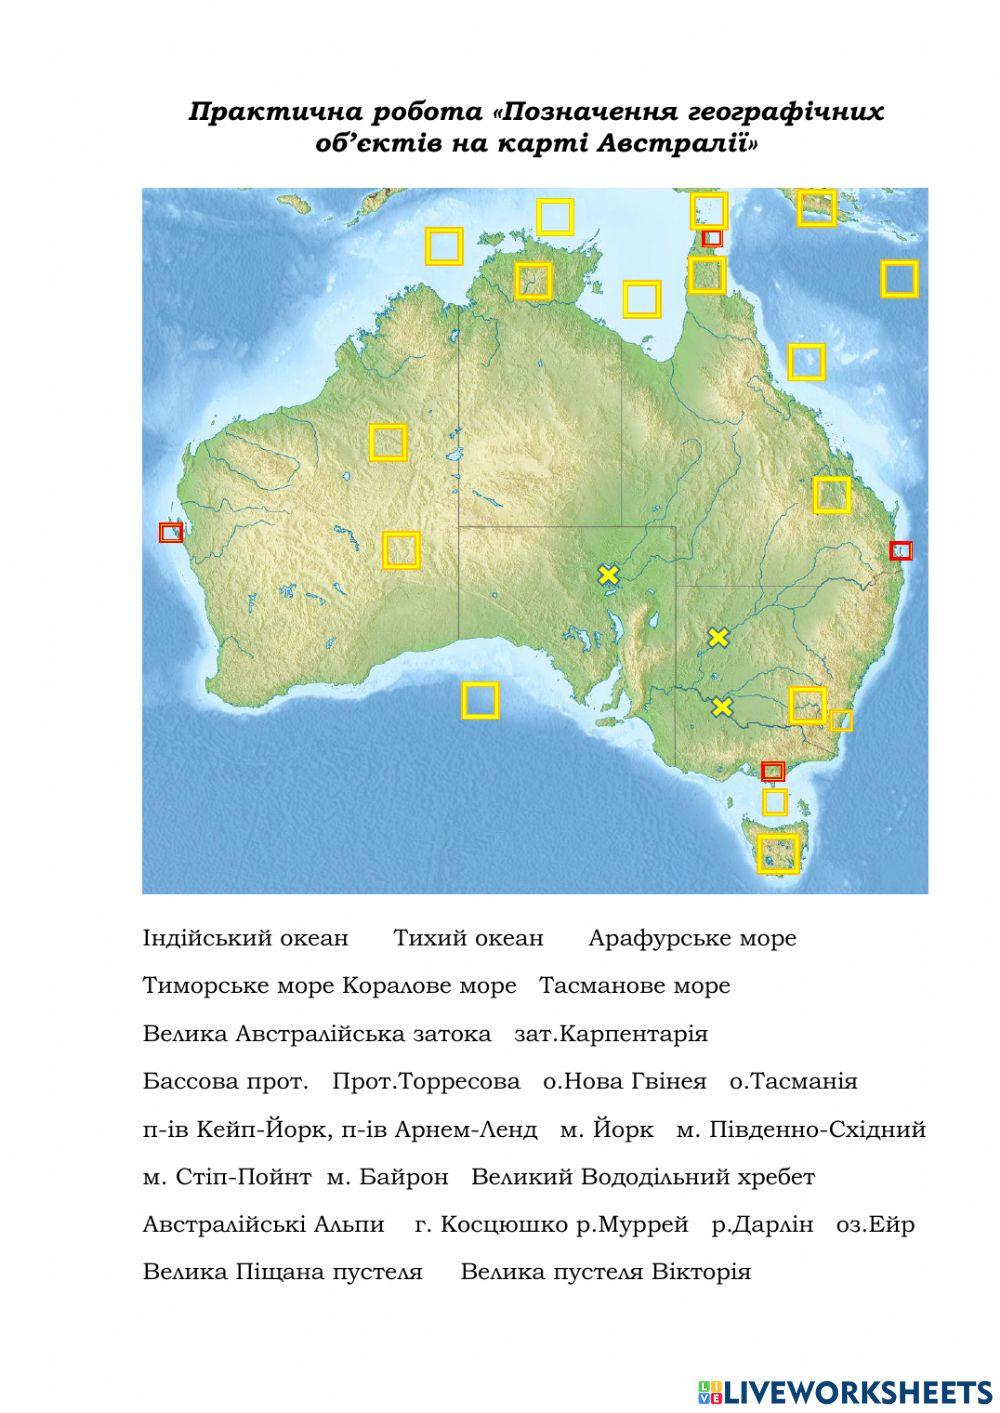 Практична робота-Позначення географічних об'єктів Австралії-